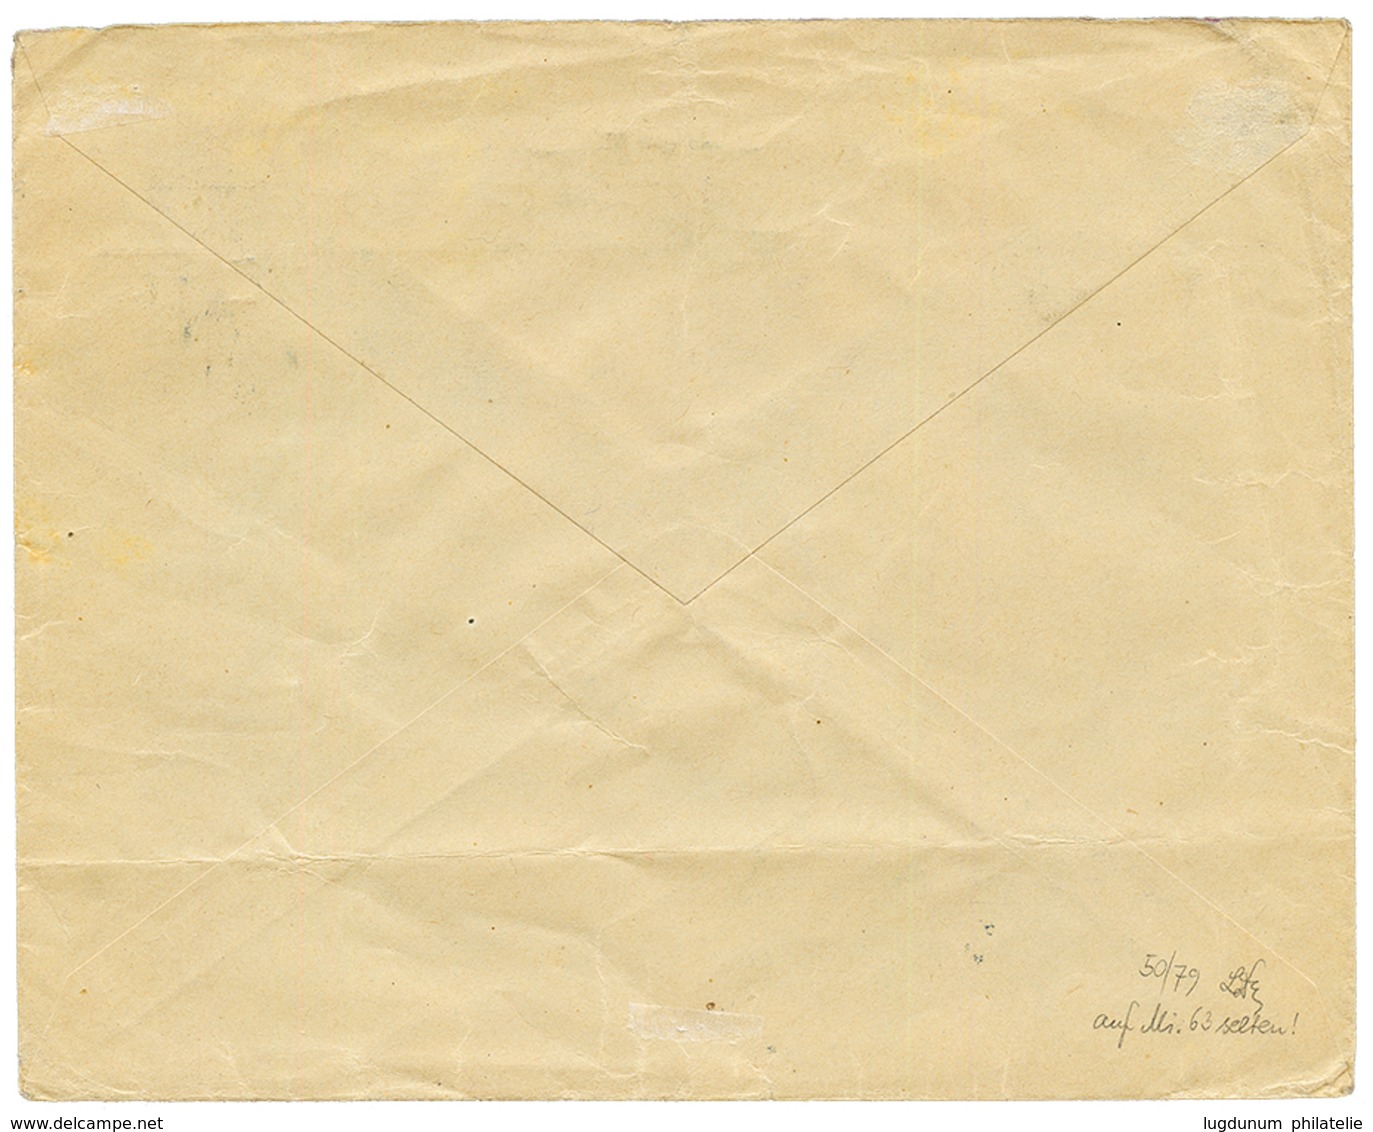 ALEXANDRETTE : 1914 1P Canc. ALEXANDRETTE On Commercial Envelope To BADEN. Superb. - Levant Autrichien